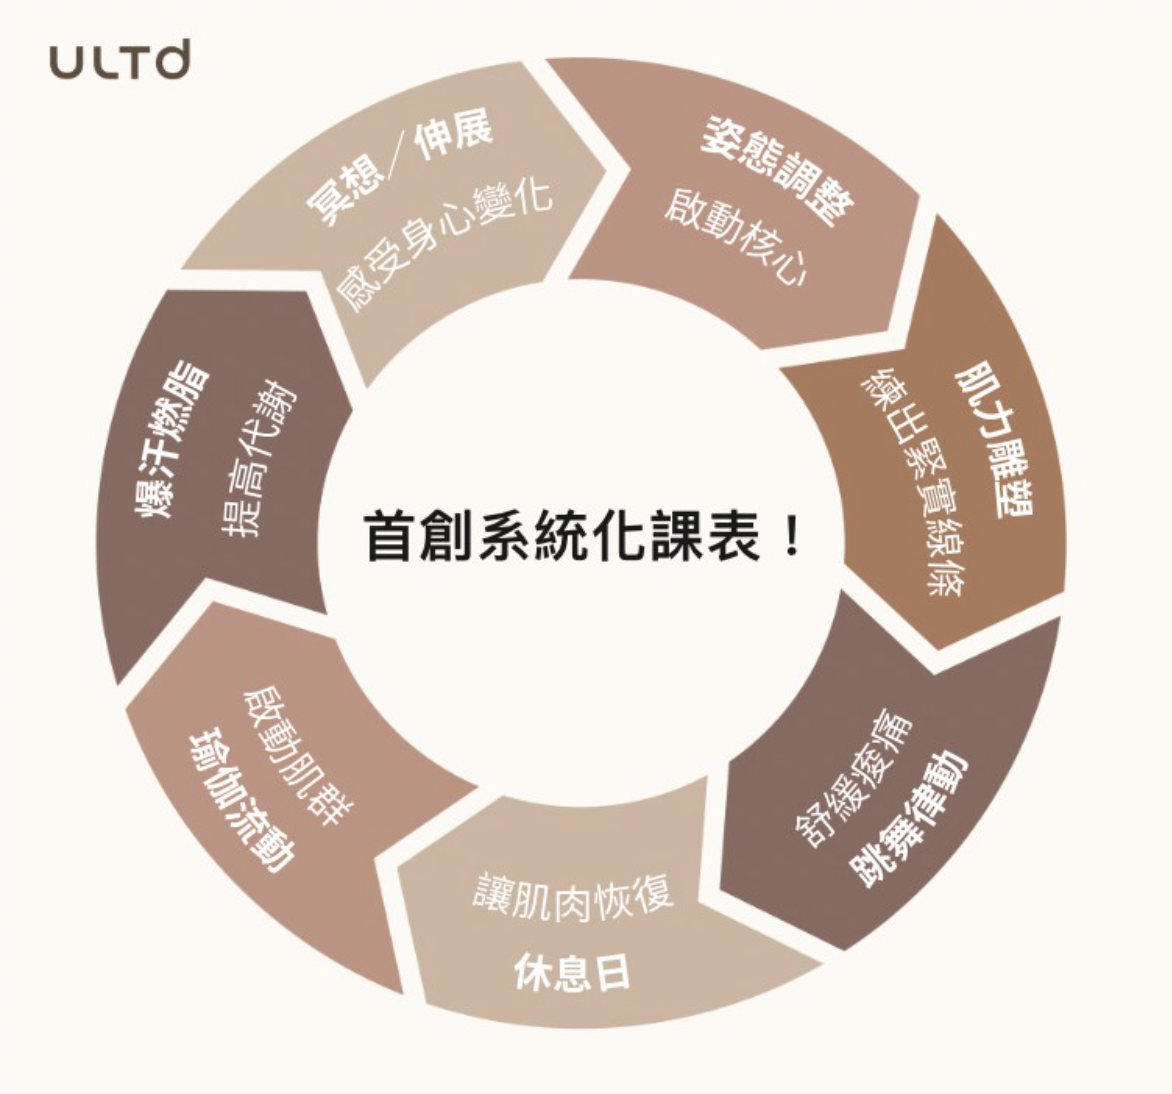 Ultd首創線上華人運動教室系統化課表